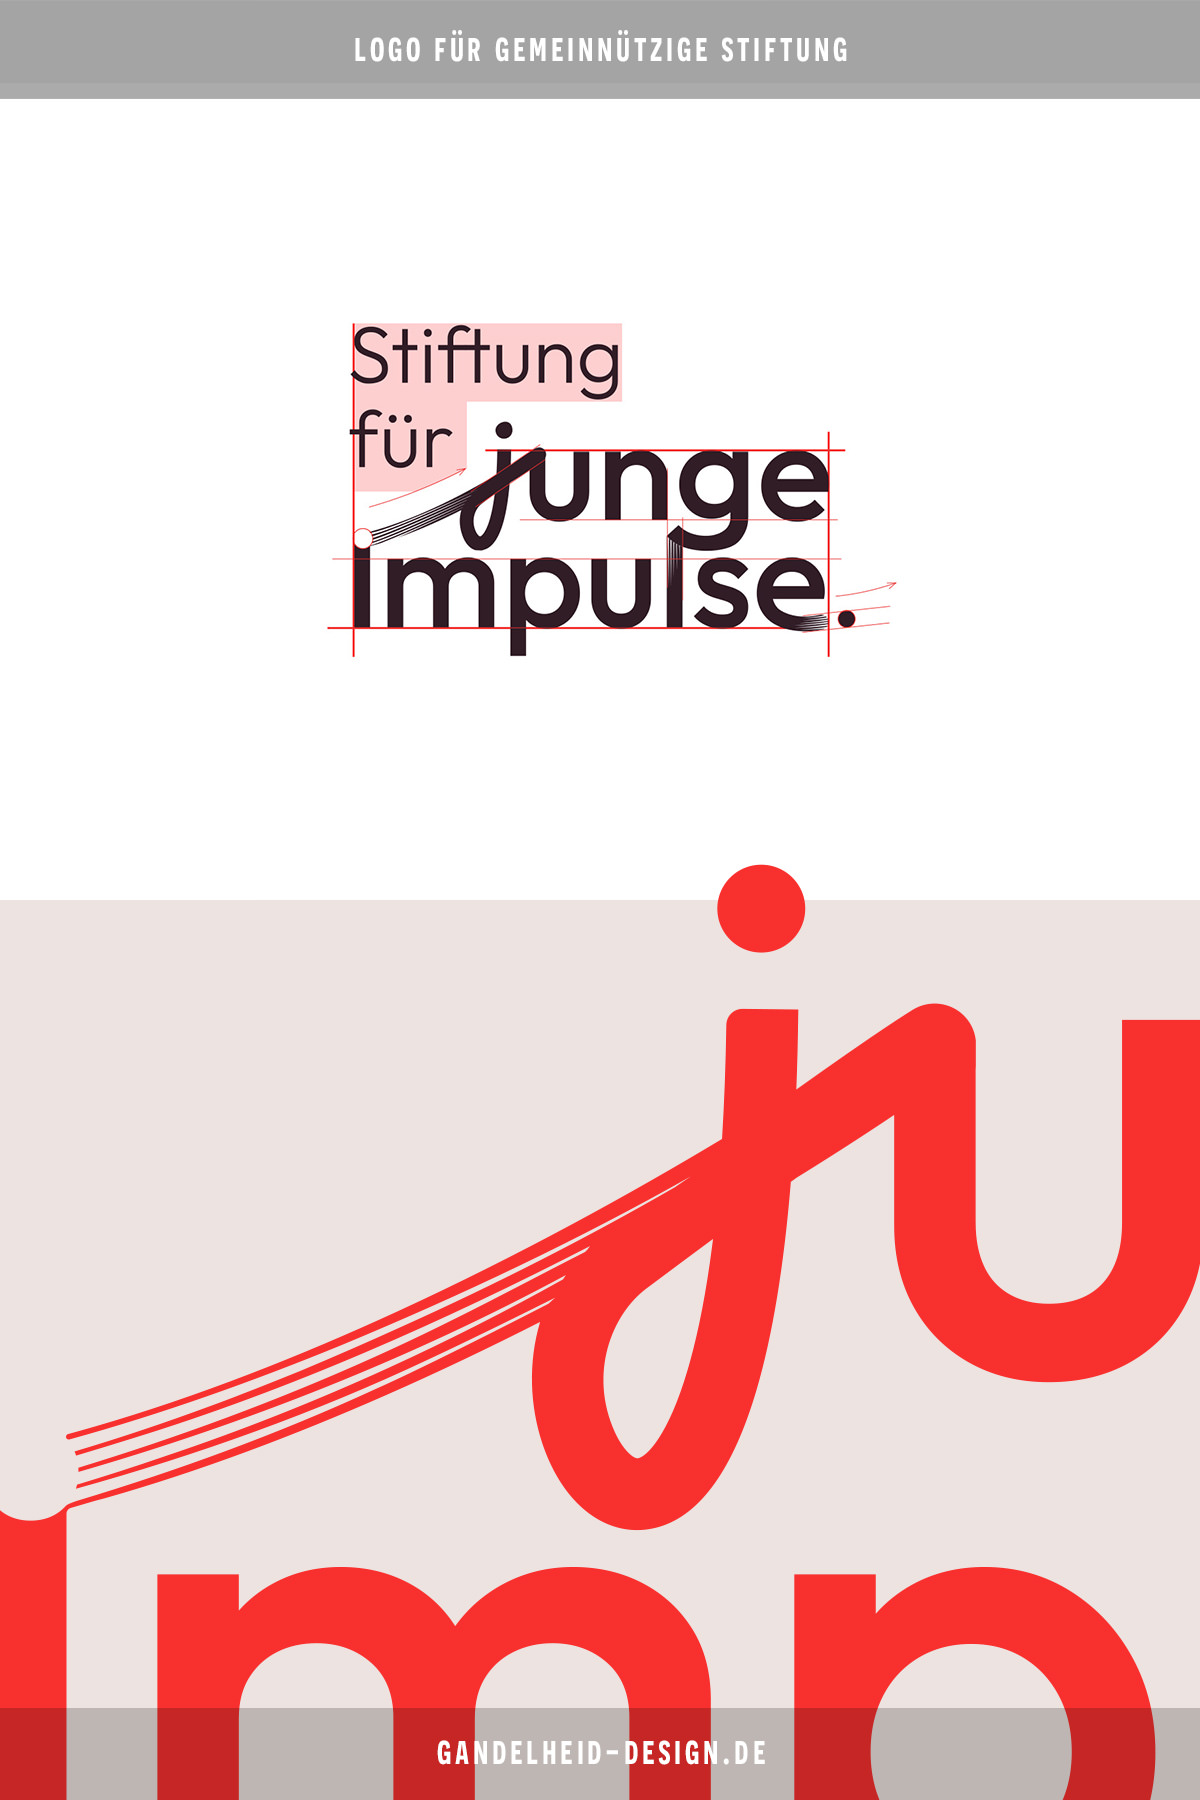 Logo für gemeinnützige Stiftung, Aufbau und Proportionen 